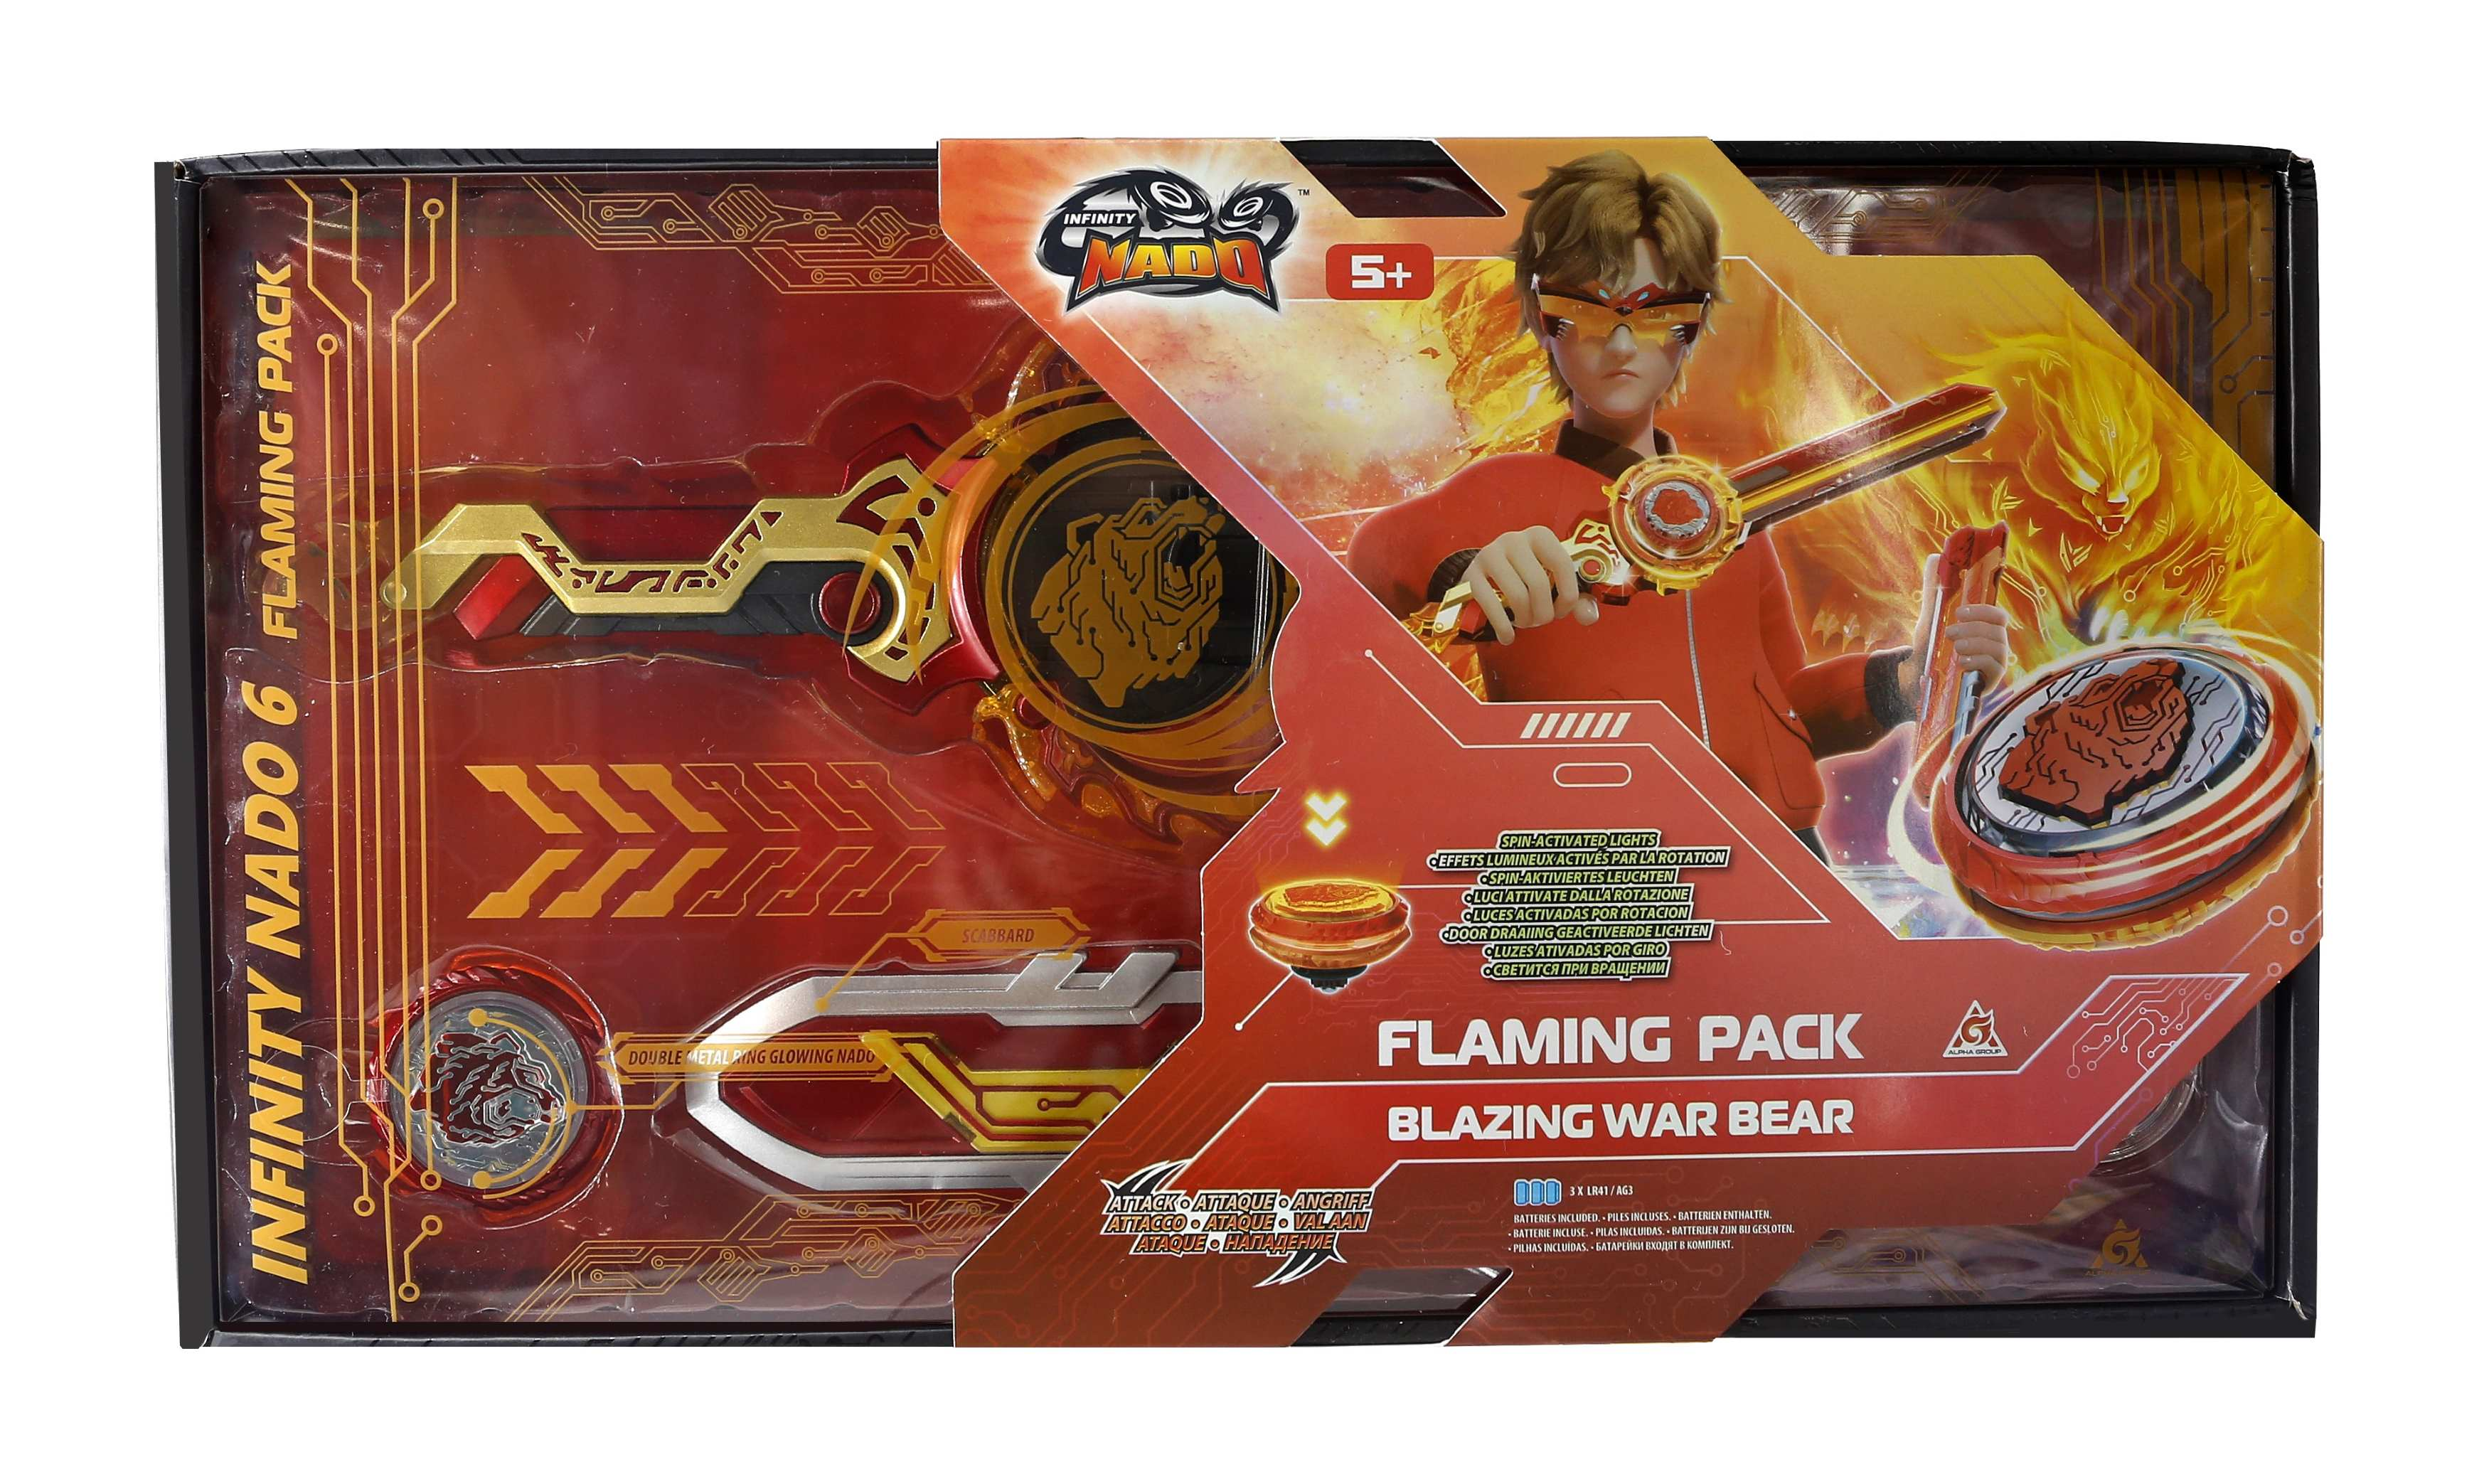 Волчок Infinity Nado VI Flaming Pack Пылающий Боевой Медведь (Blazing War Bear) (EU654142) фото 1